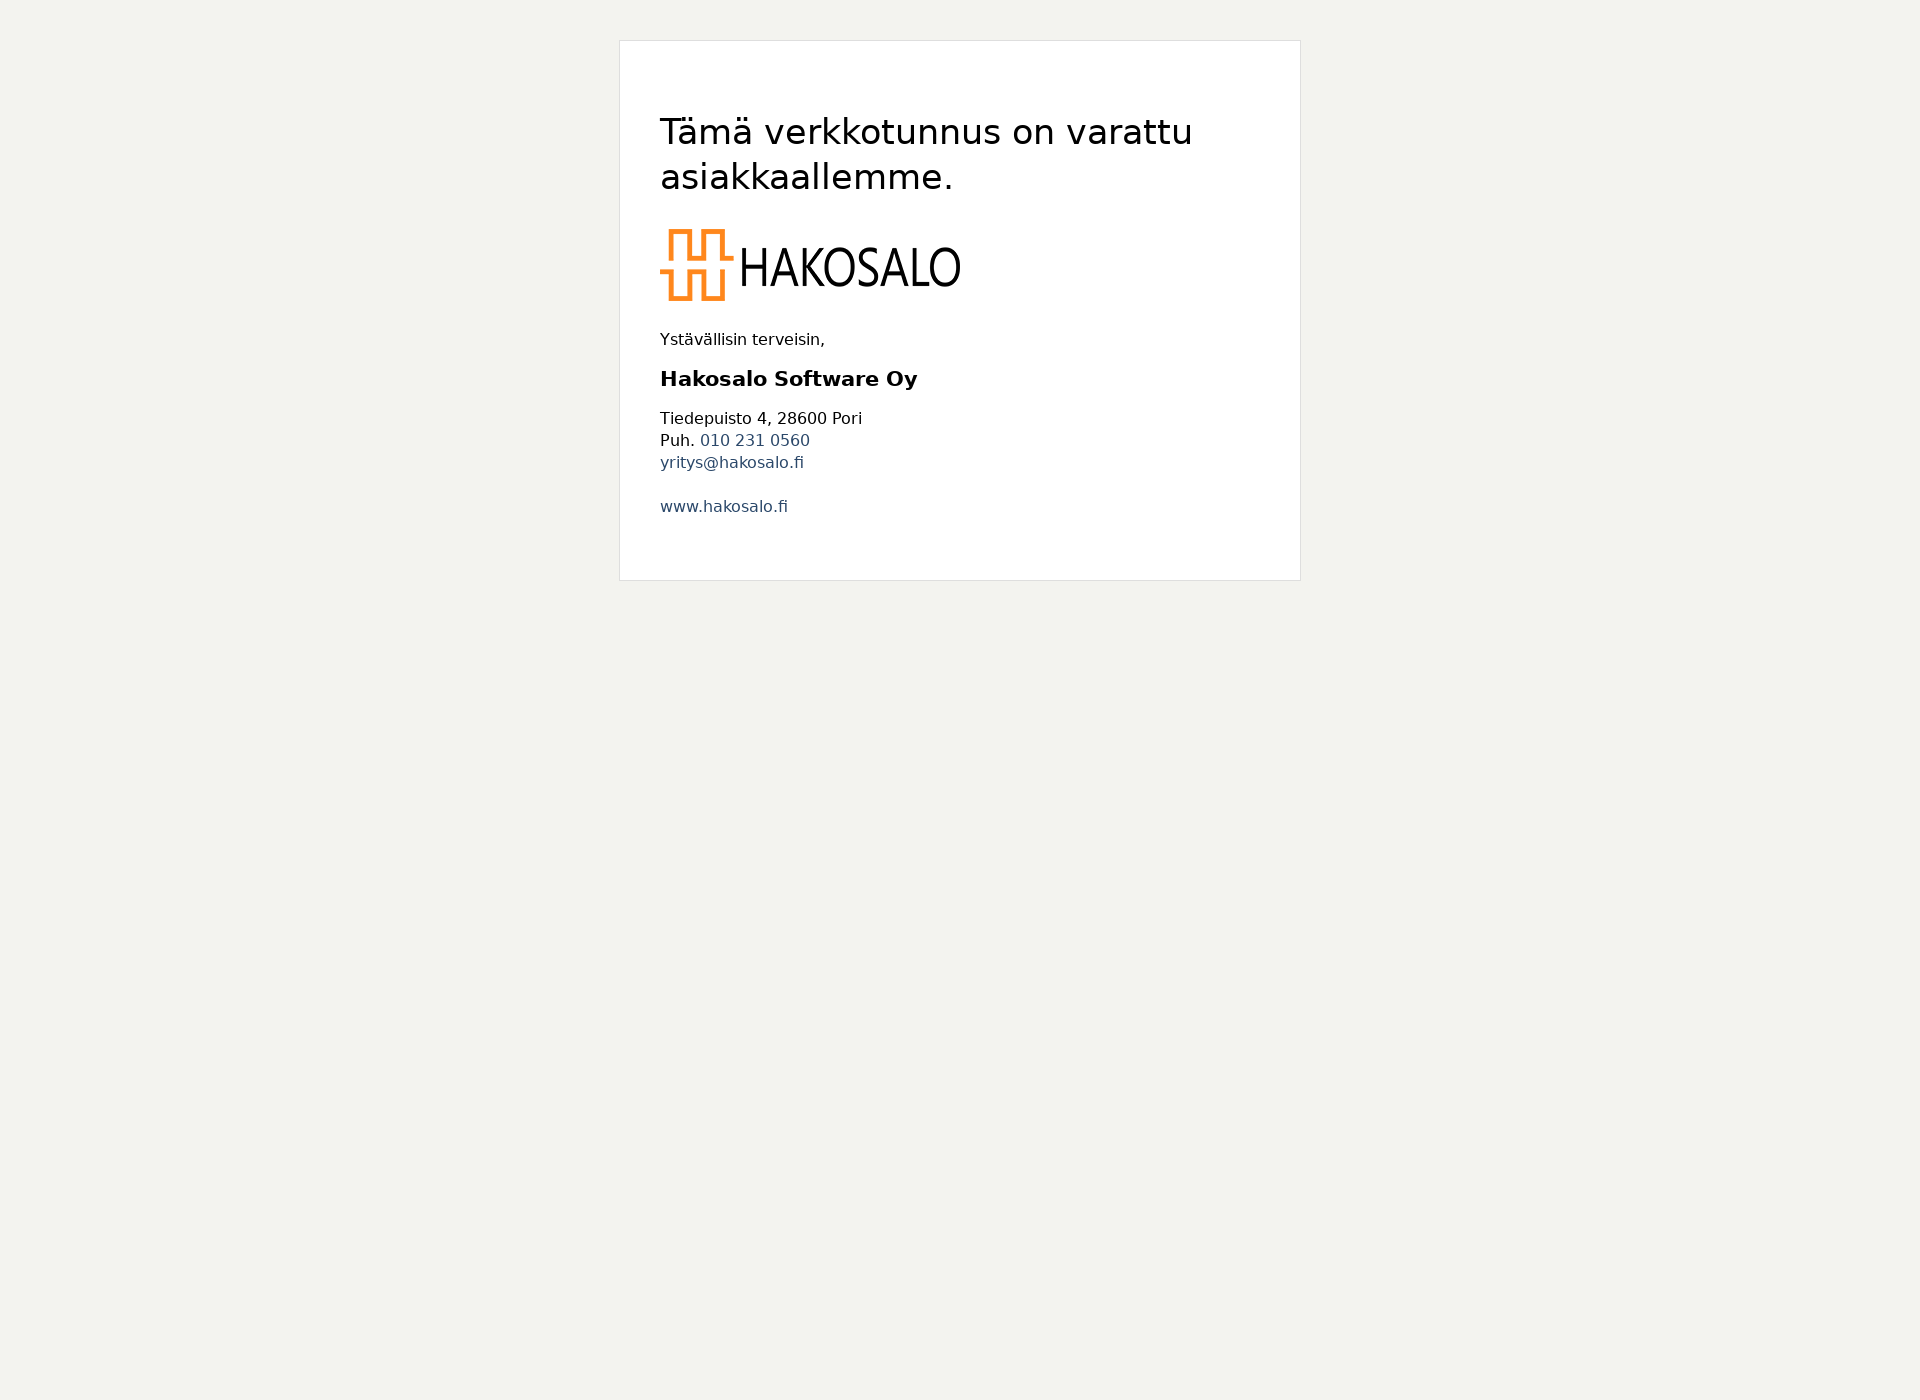 Screenshot for kilpailutakuljetuksia.fi